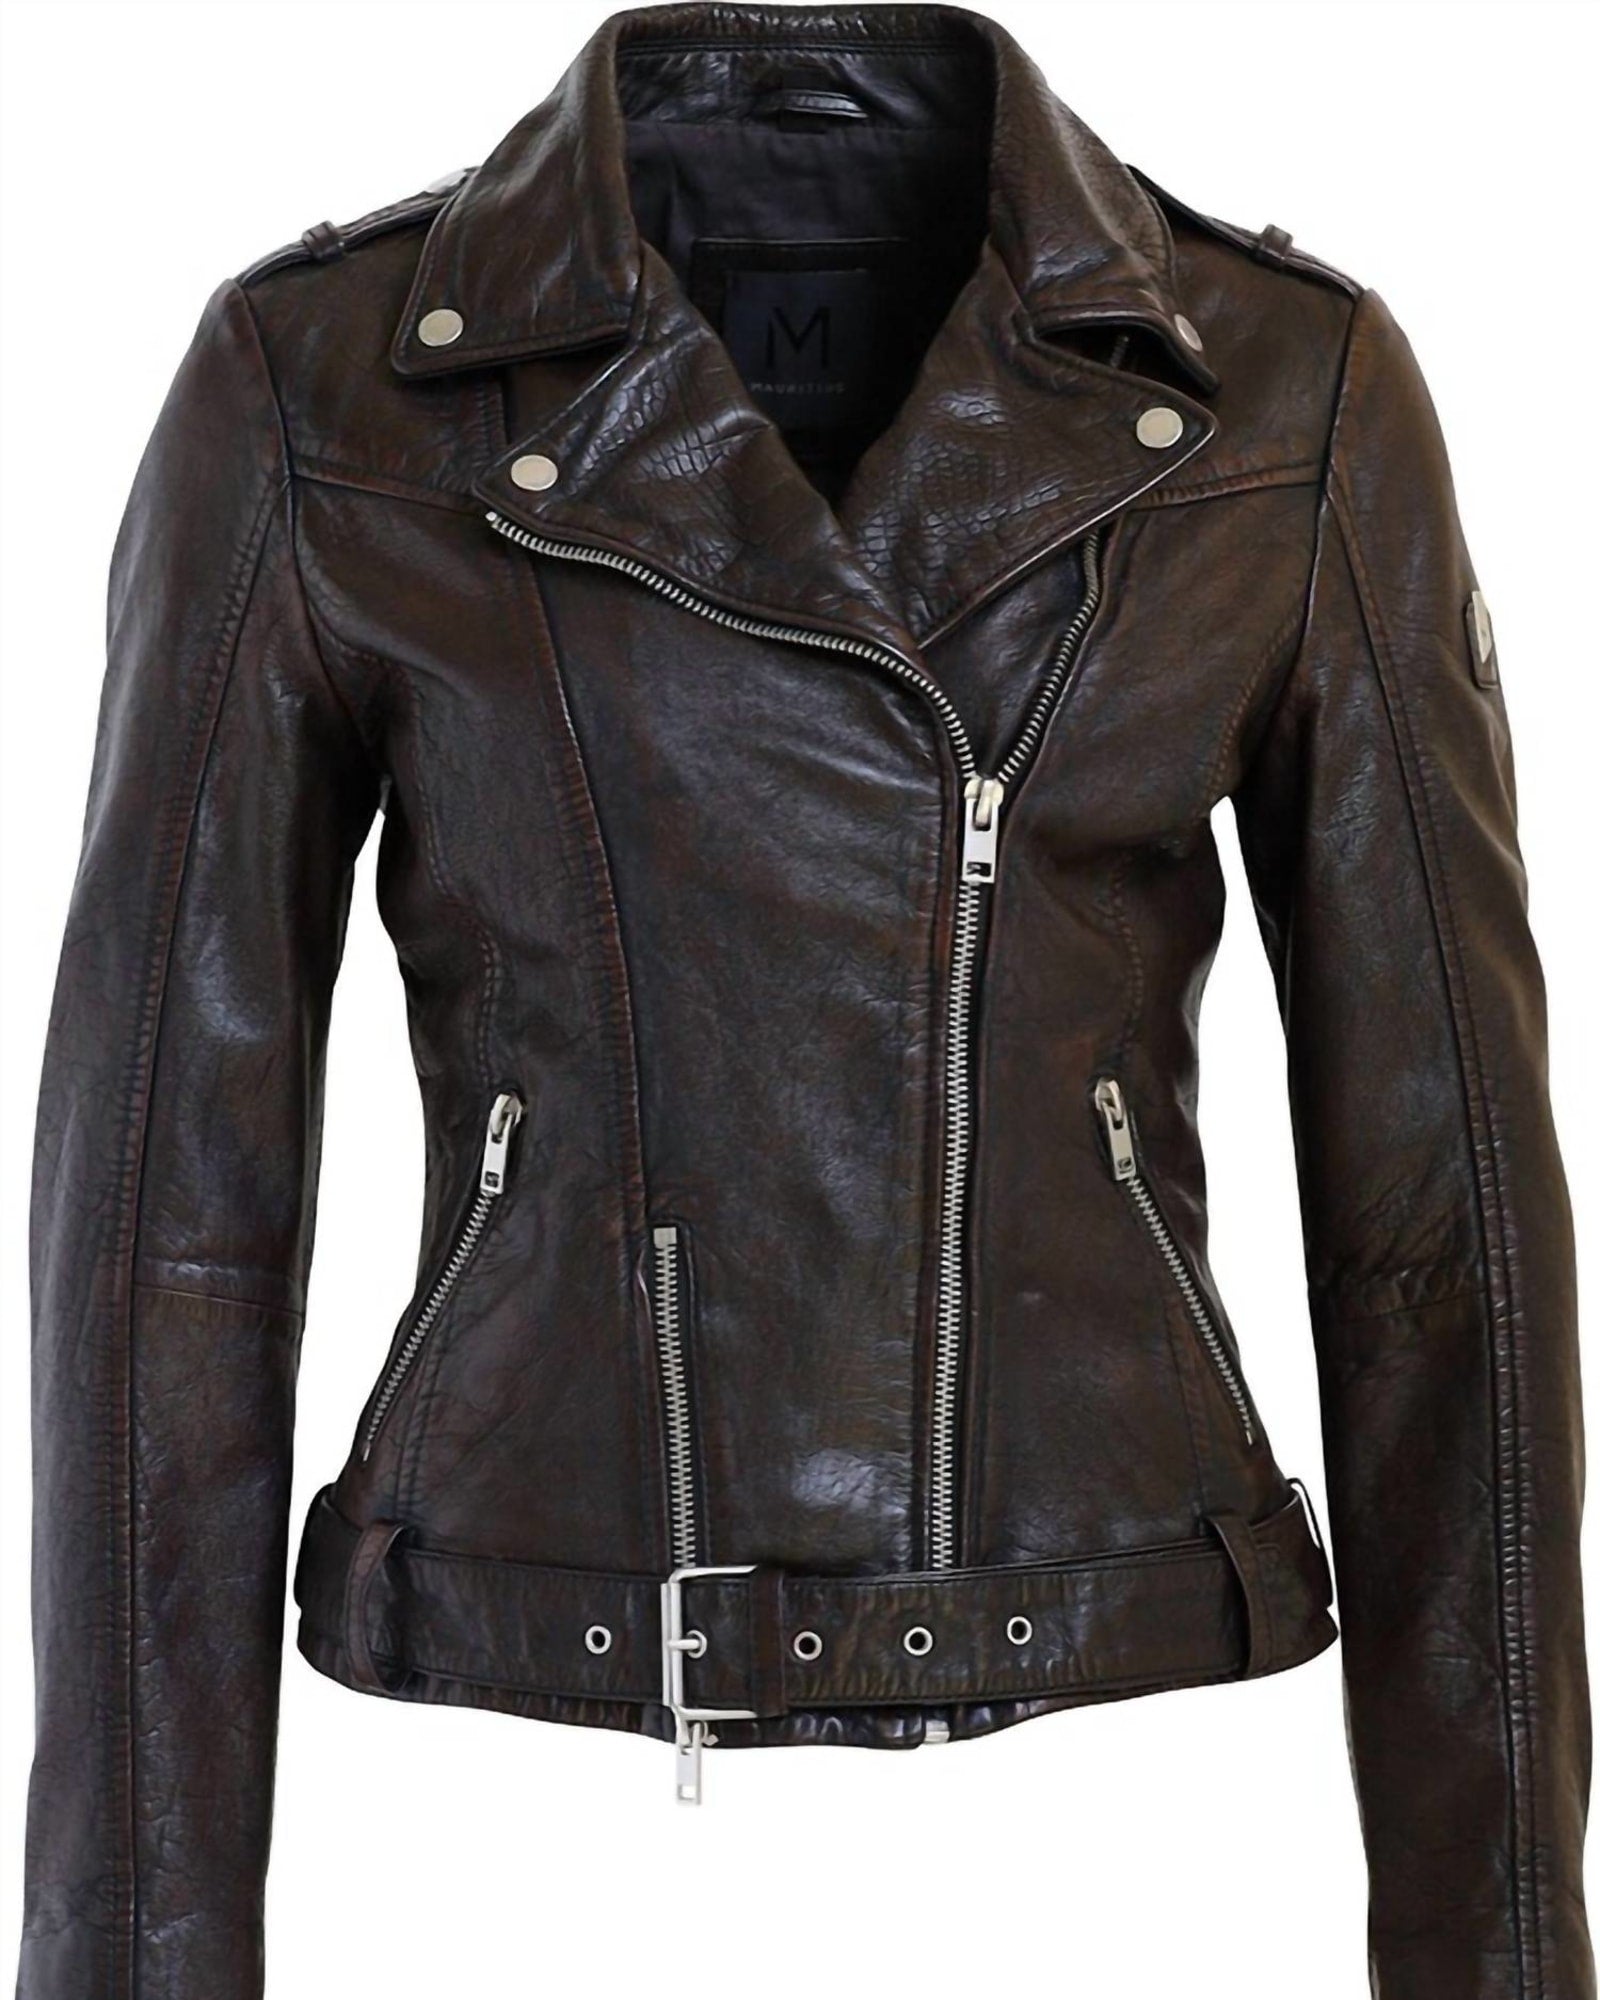 Wild Rf Leather Jacket in Mahogany | Mahogany